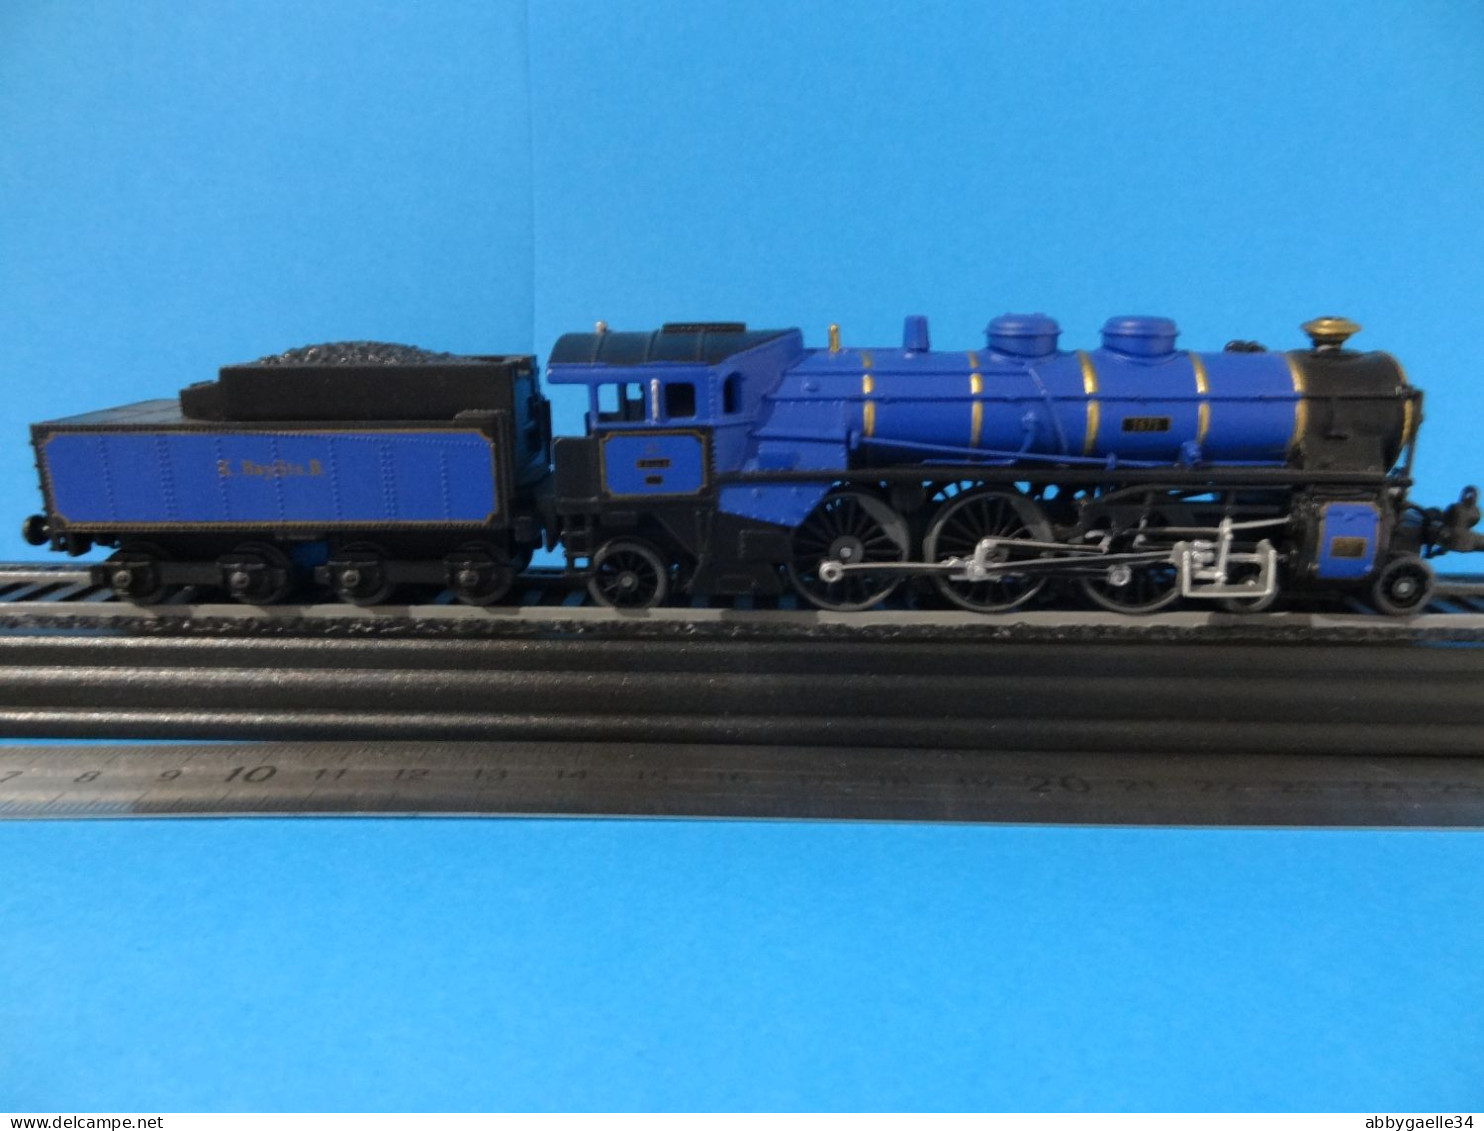 A saisir **Lot de 29 locomotives** en plastique édition HACHETTE voir description pour détail des modèles